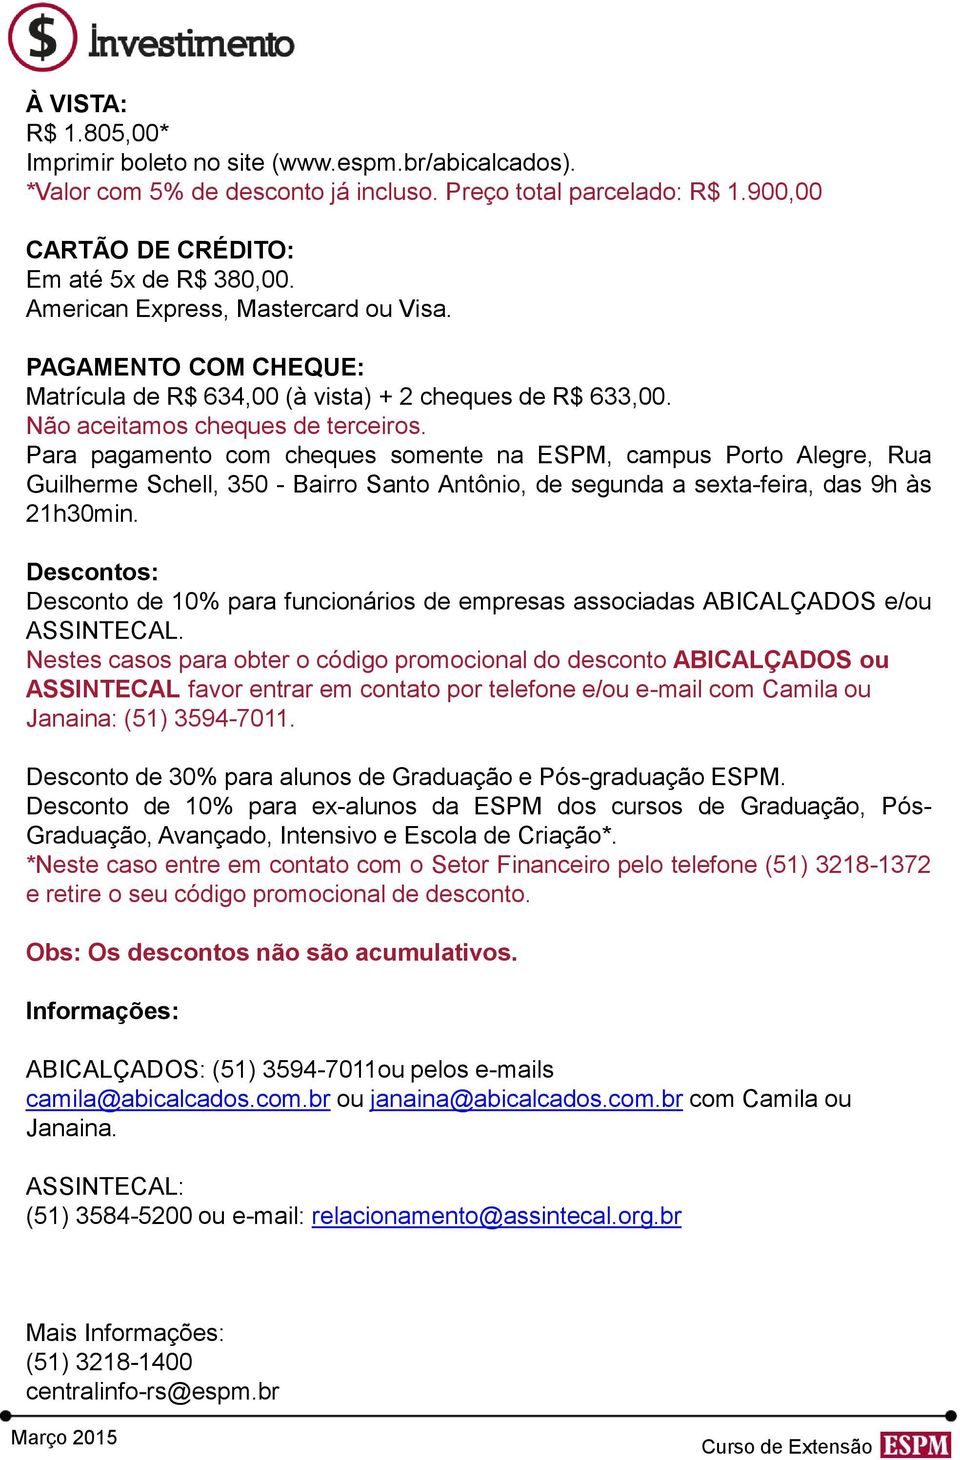 Para pagamento com cheques somente na ESPM, campus Porto Alegre, Rua Guilherme Schell, 350 - Bairro Santo Antônio, de segunda a sexta-feira, das 9h às 21h30min.